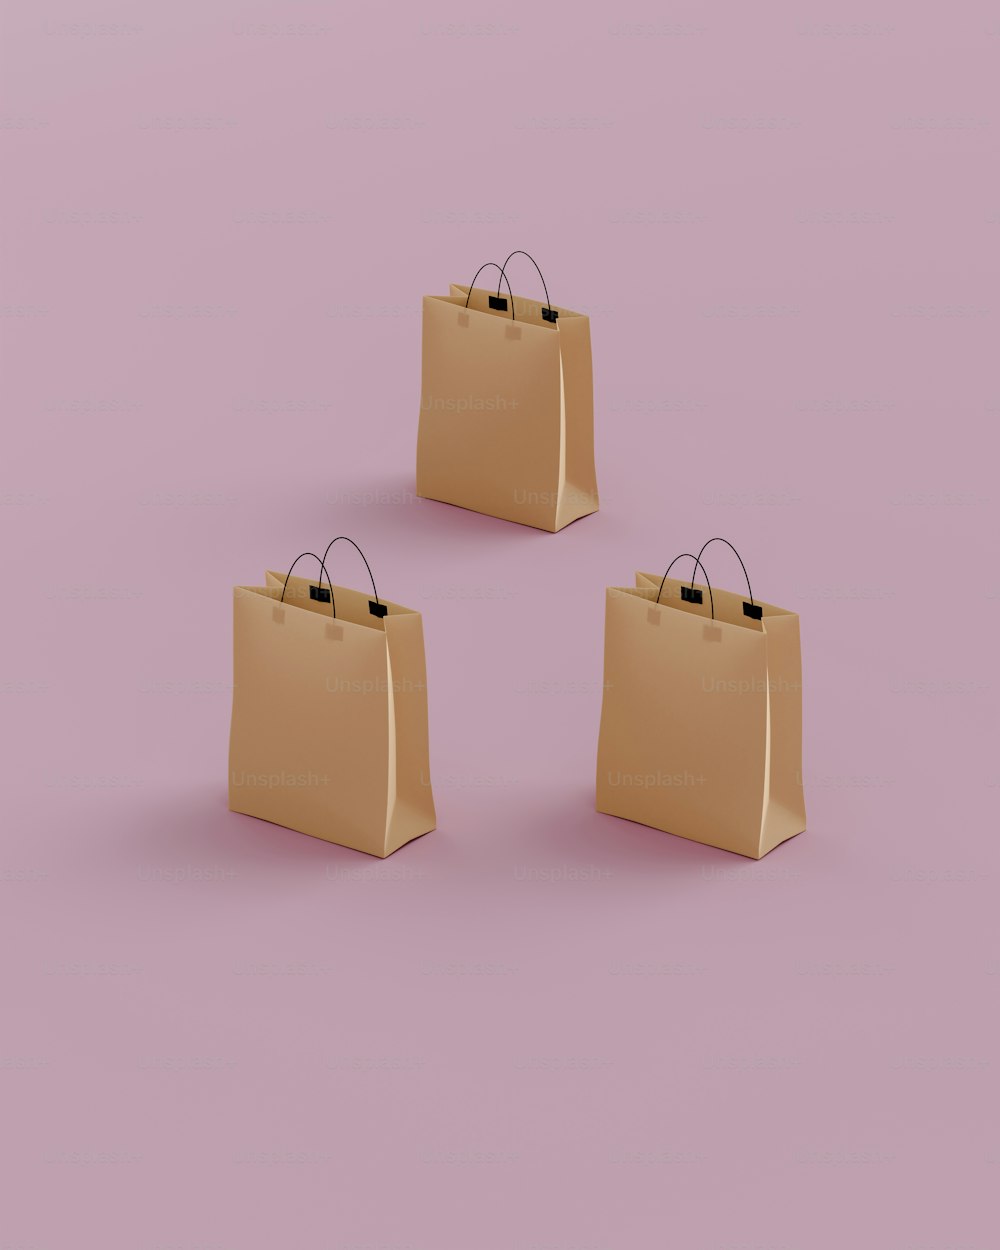 분홍색 배경에 세 개의 갈색 쇼핑백